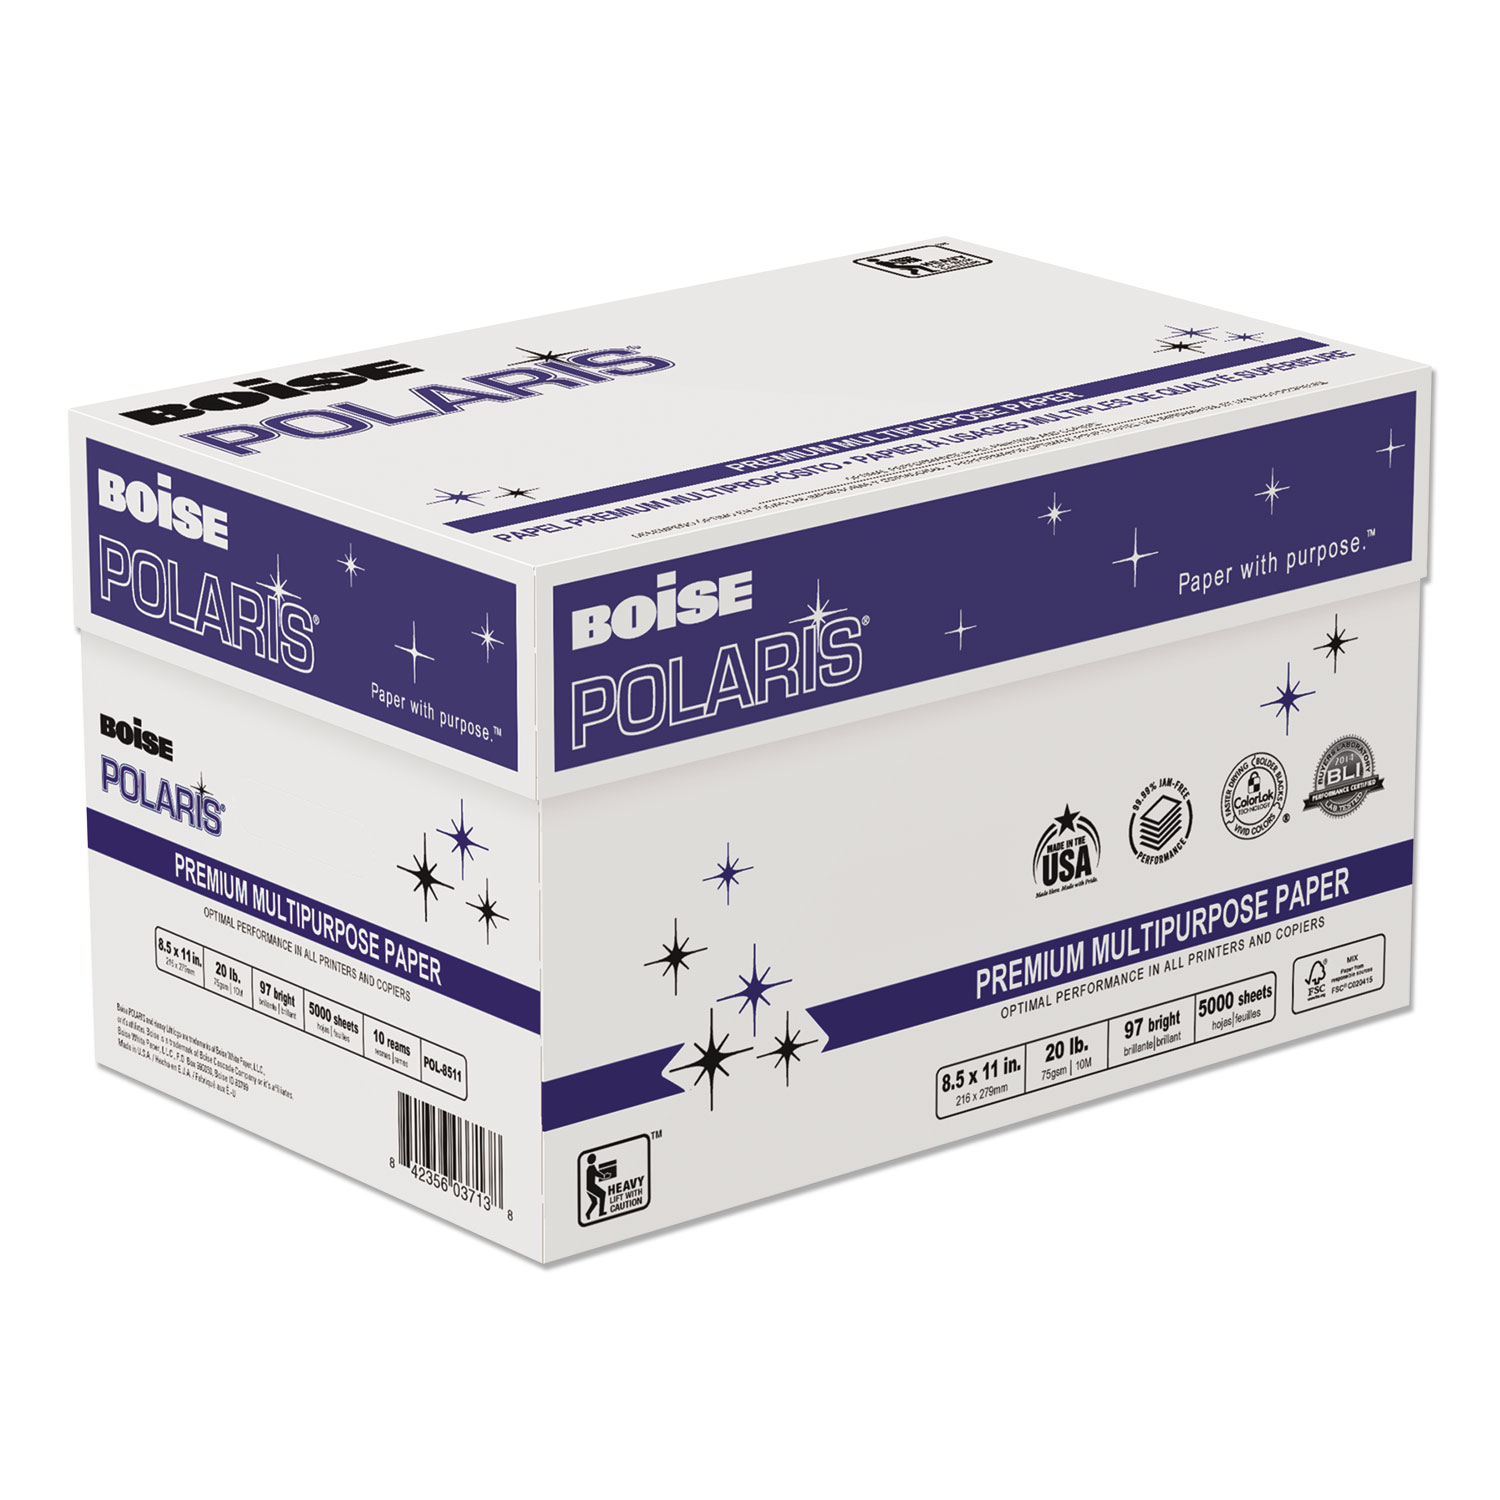 POLARIS Premium Multipurpose Paper, 97 Bright, 20lb, 8.5 x 11, White, 500 Sheets/Ream, 10 Reams/Carton